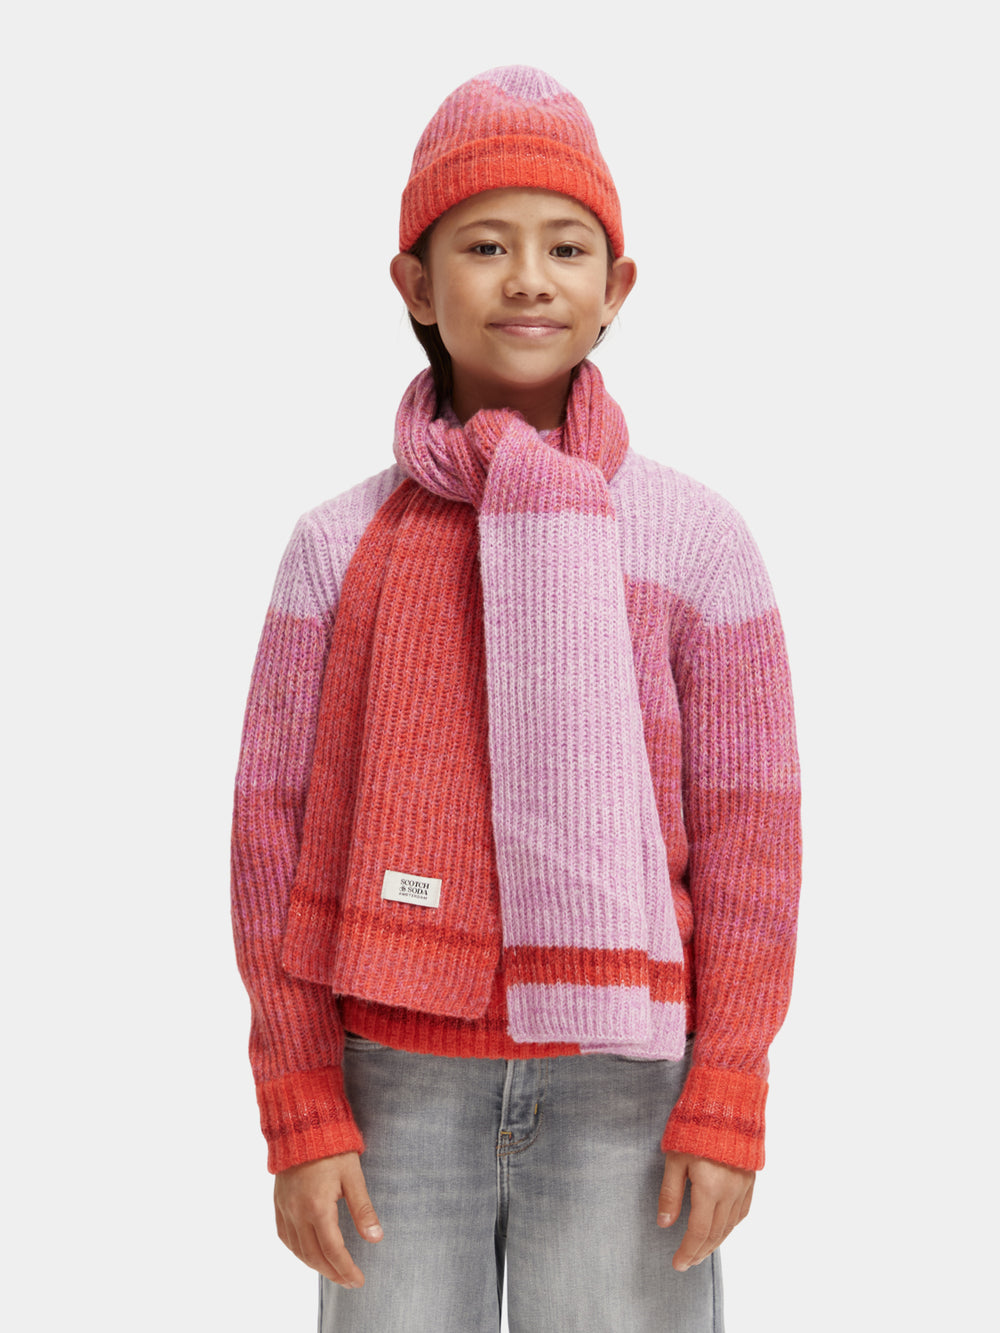 Kids - Knitted gradient scarf - Scotch & Soda NZ